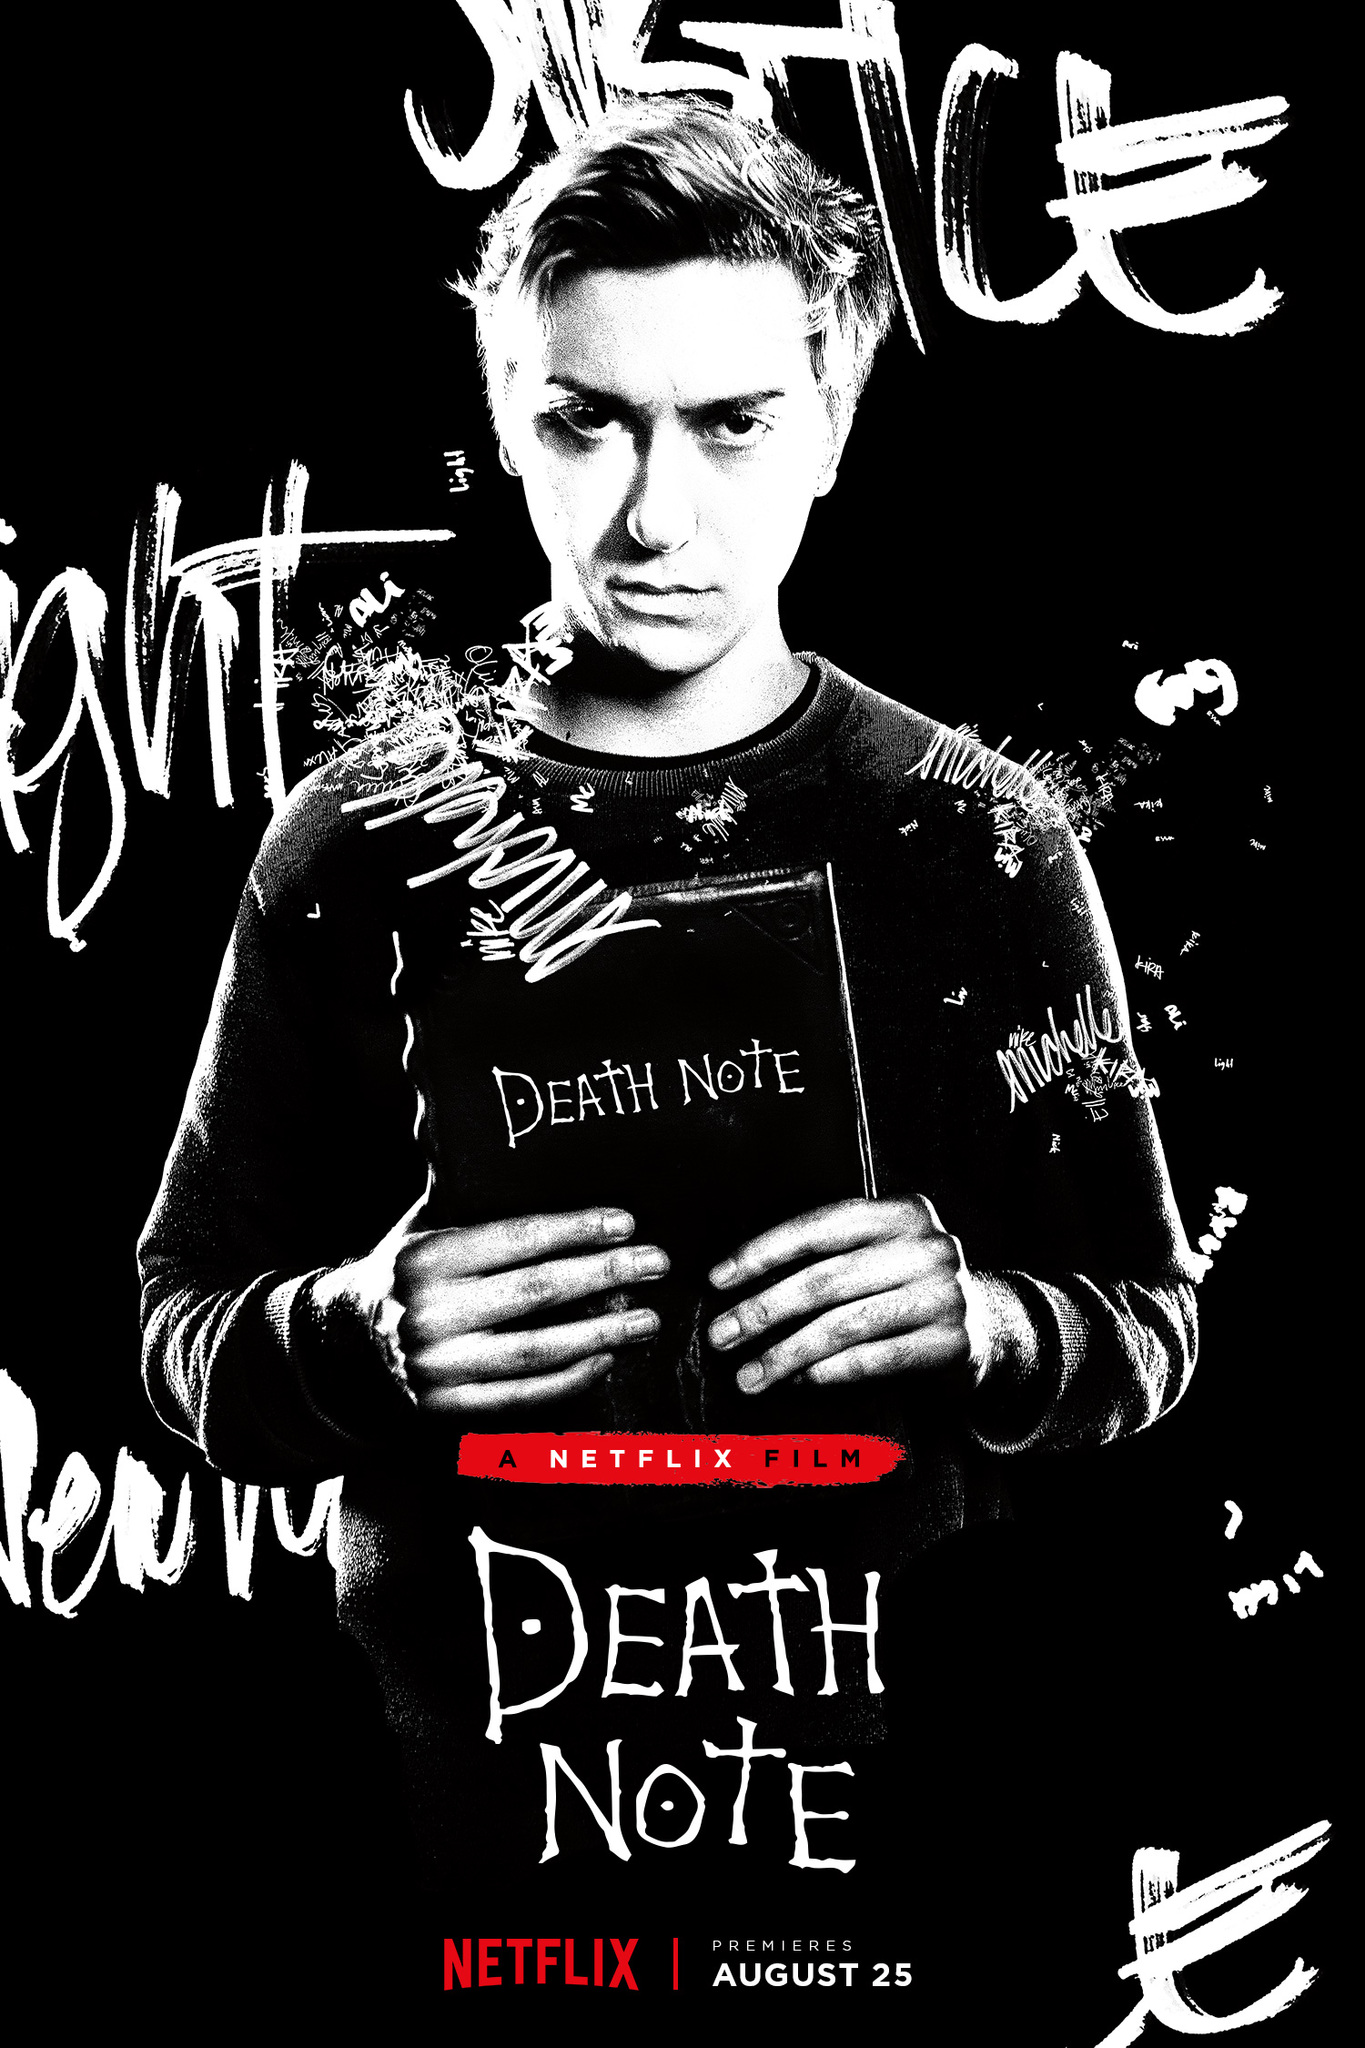 ดูหนังออนไลน์ฟรี Death Note (2017) เดธโน้ต ฉบับฮอลลีวูด หนังเต็มเรื่อง หนังมาสเตอร์ ดูหนังHD ดูหนังออนไลน์ ดูหนังใหม่